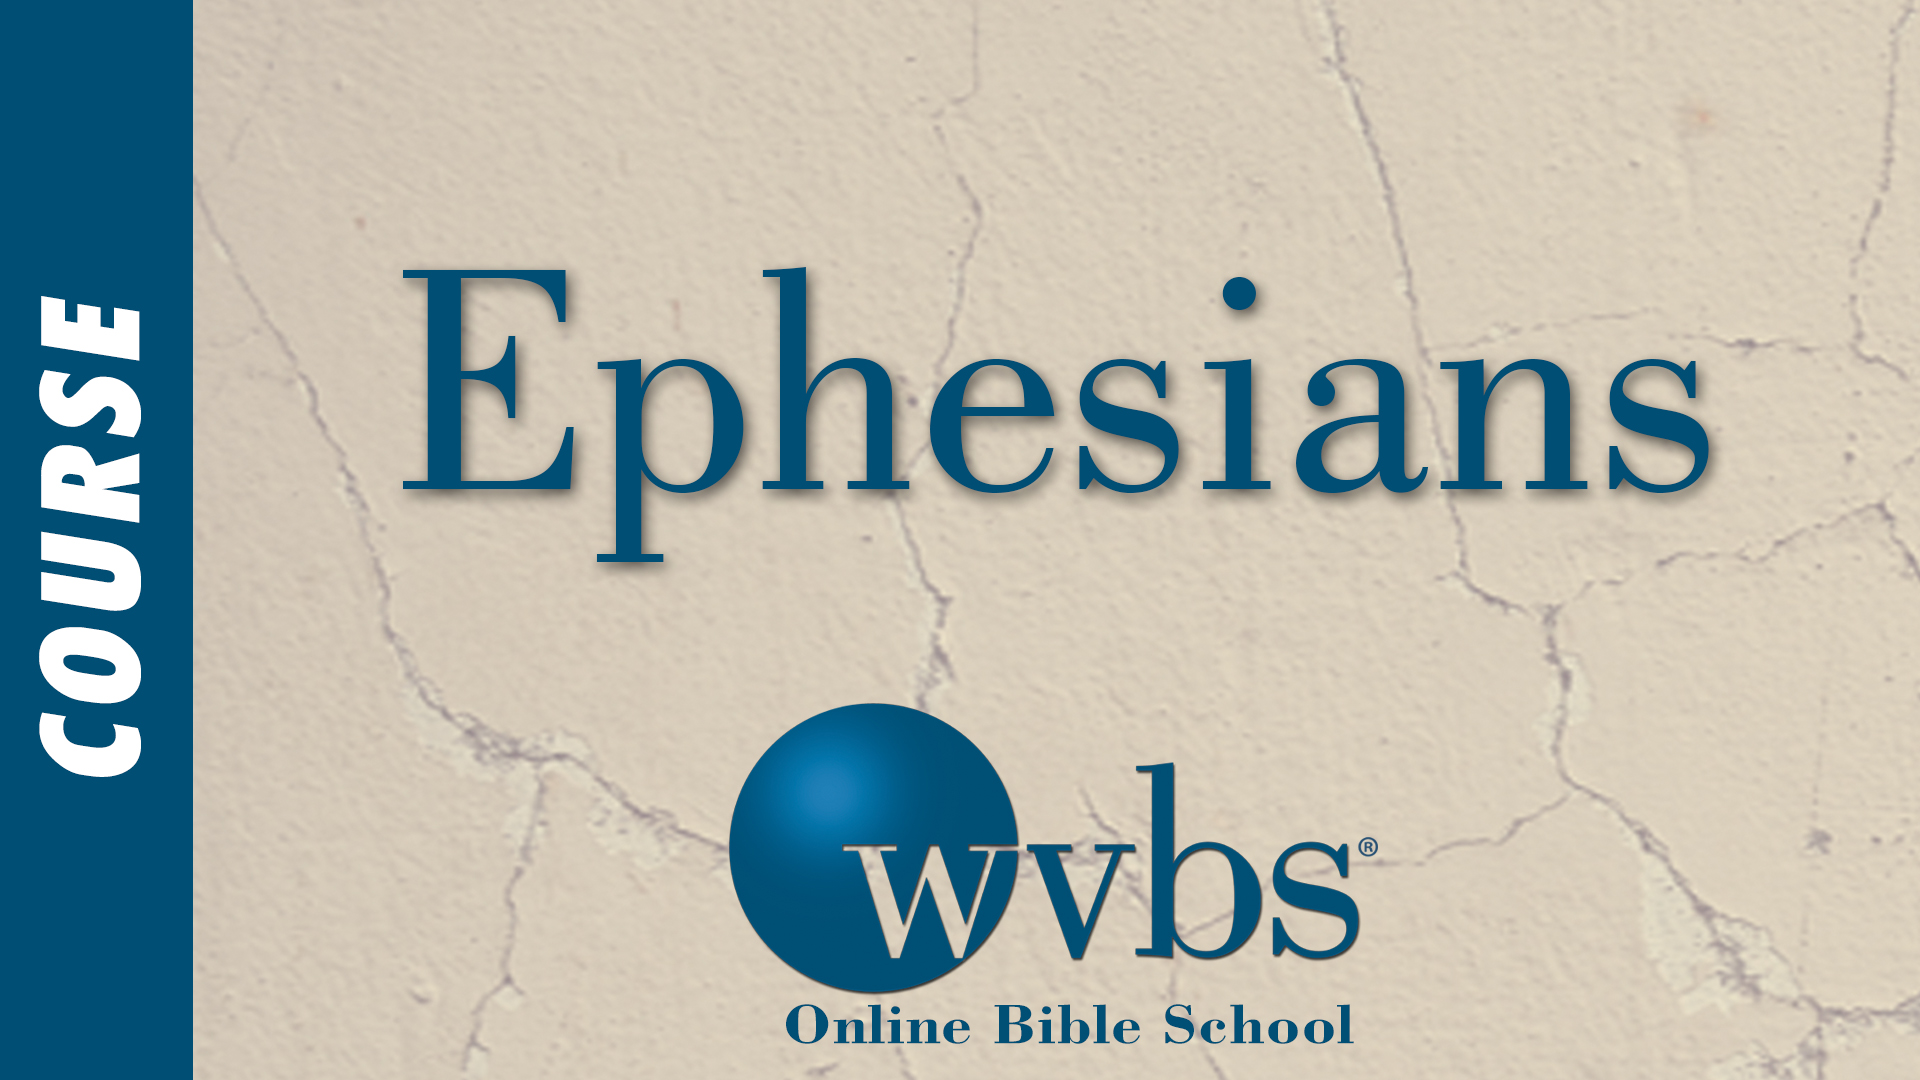 Ephesians (Online Bible School)